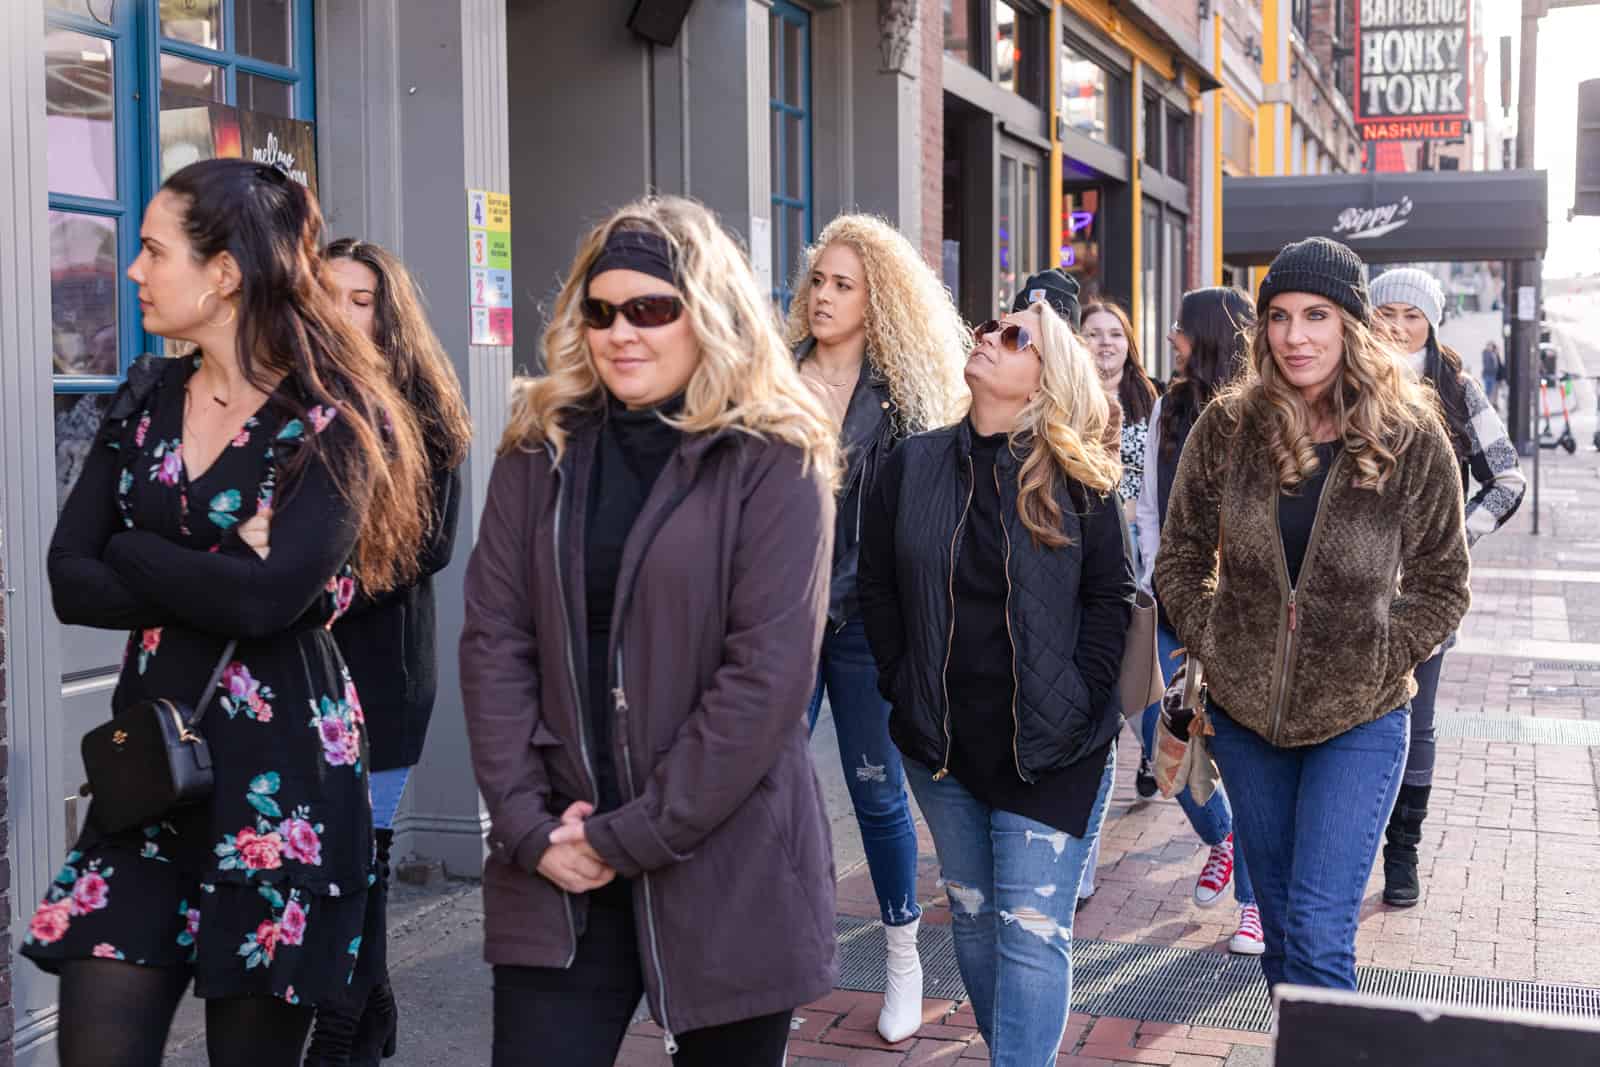 Women walking down street dressed in coats.